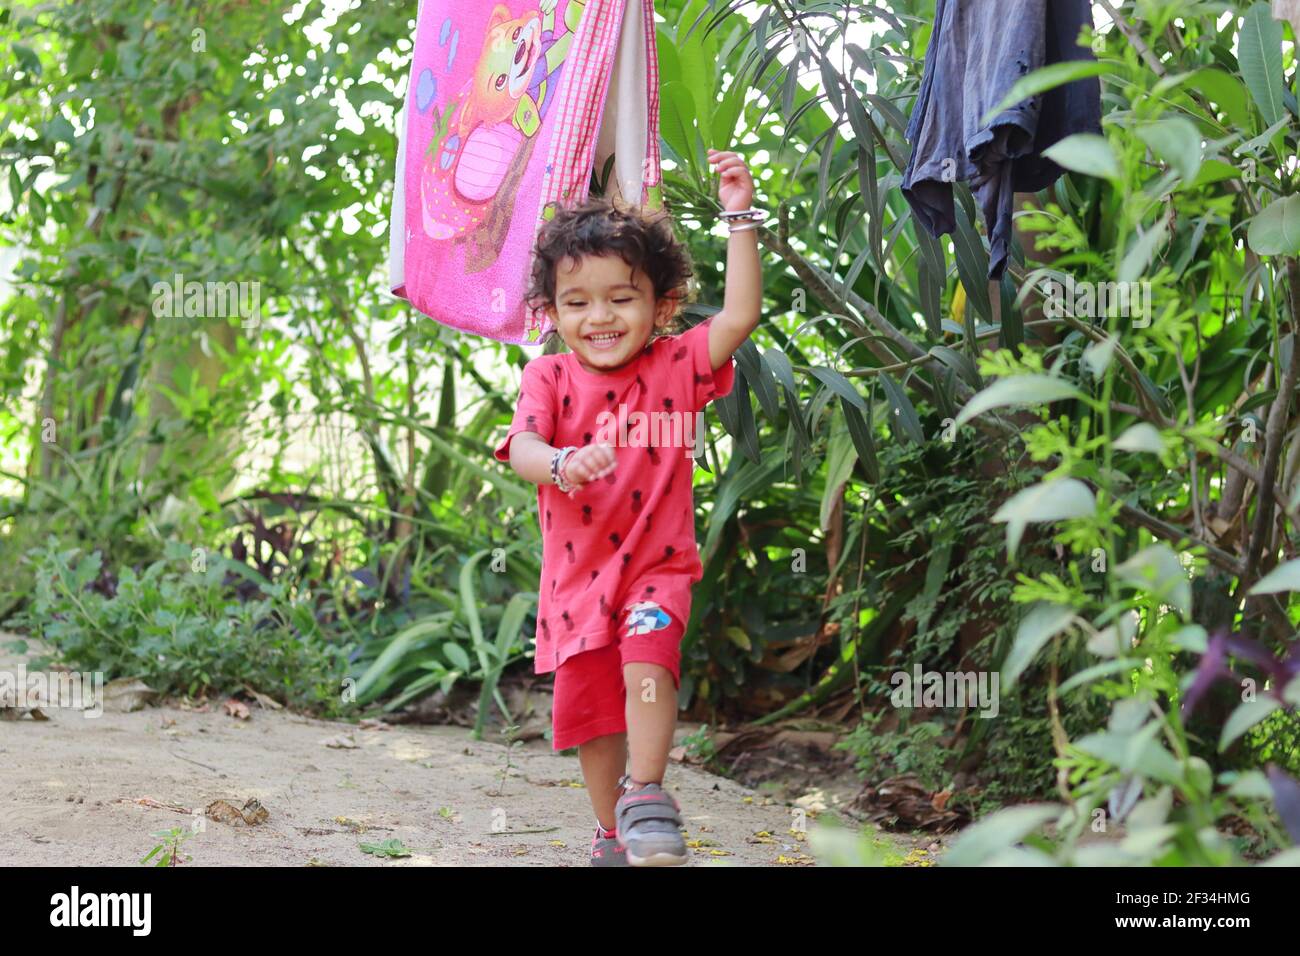 un niño de origen indio que salta y juega en el jardín, india.Concept para las alegrías de la infancia, recuerdos de la infancia, expresiones de la cara del bebé y cuerpo Foto de stock